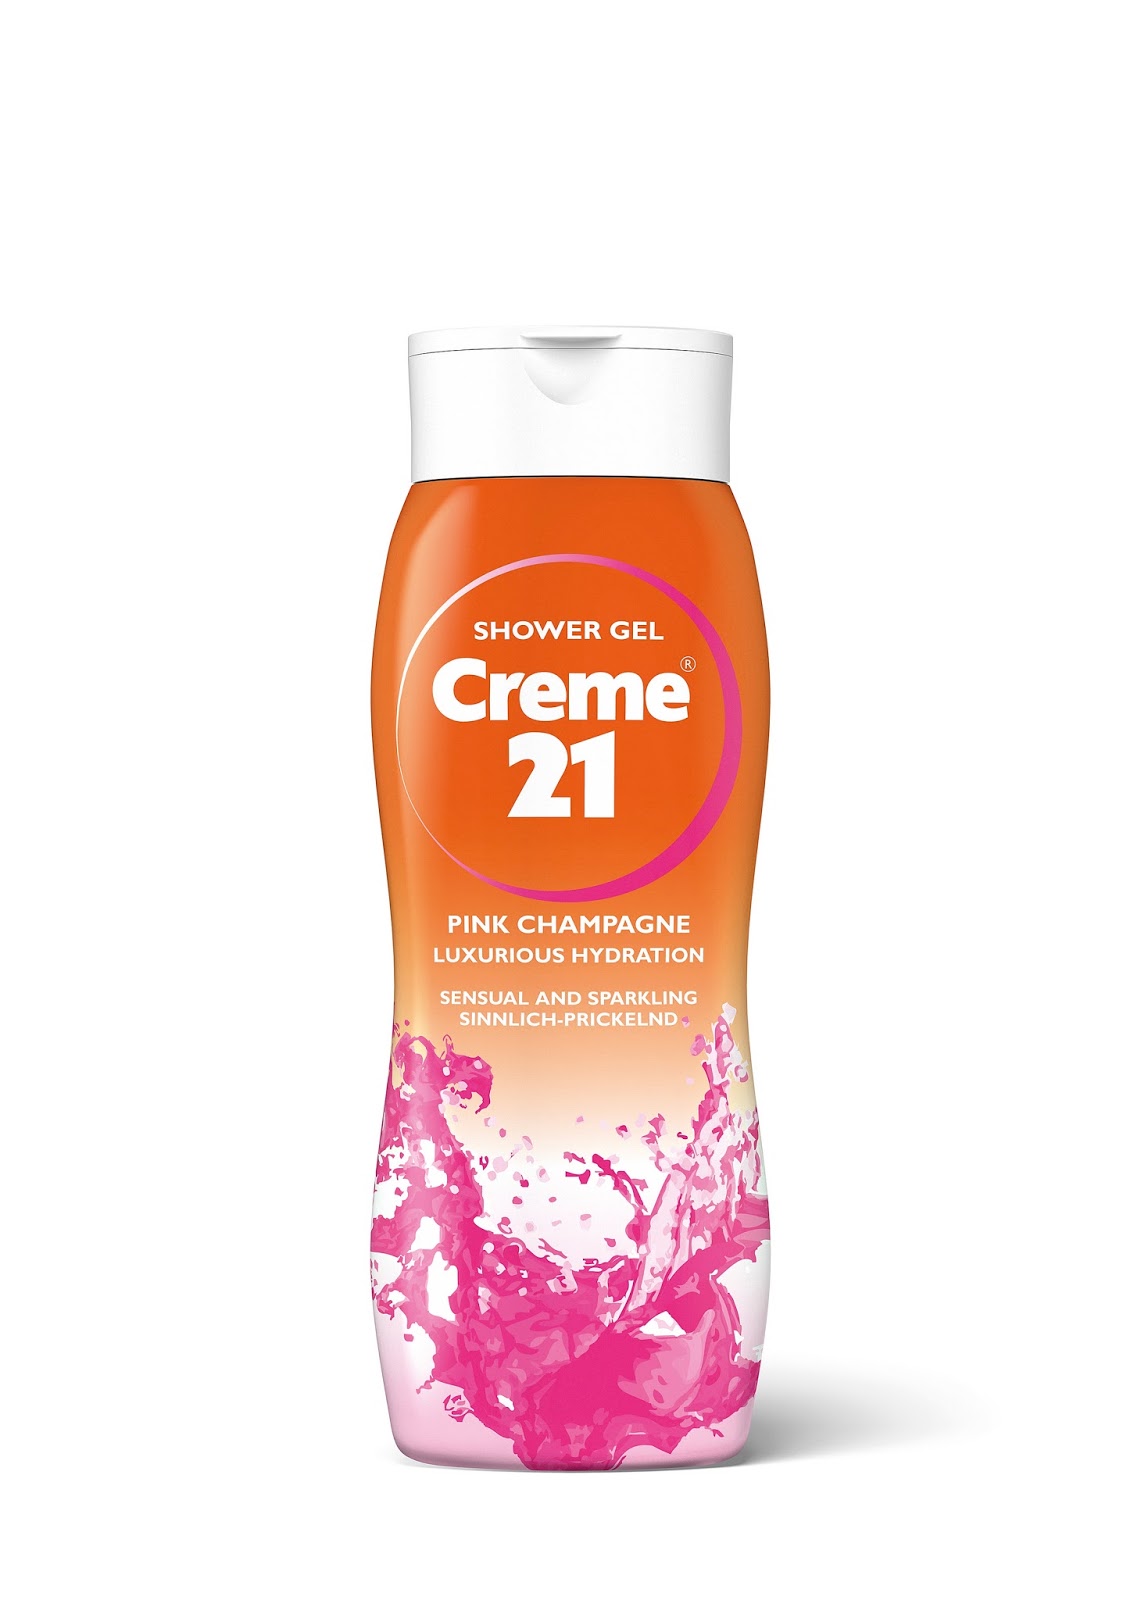 Creme Shower Gel. Гель для душа розовое шампанское. Гель для душа бренды. Creme 21 гель для рук.